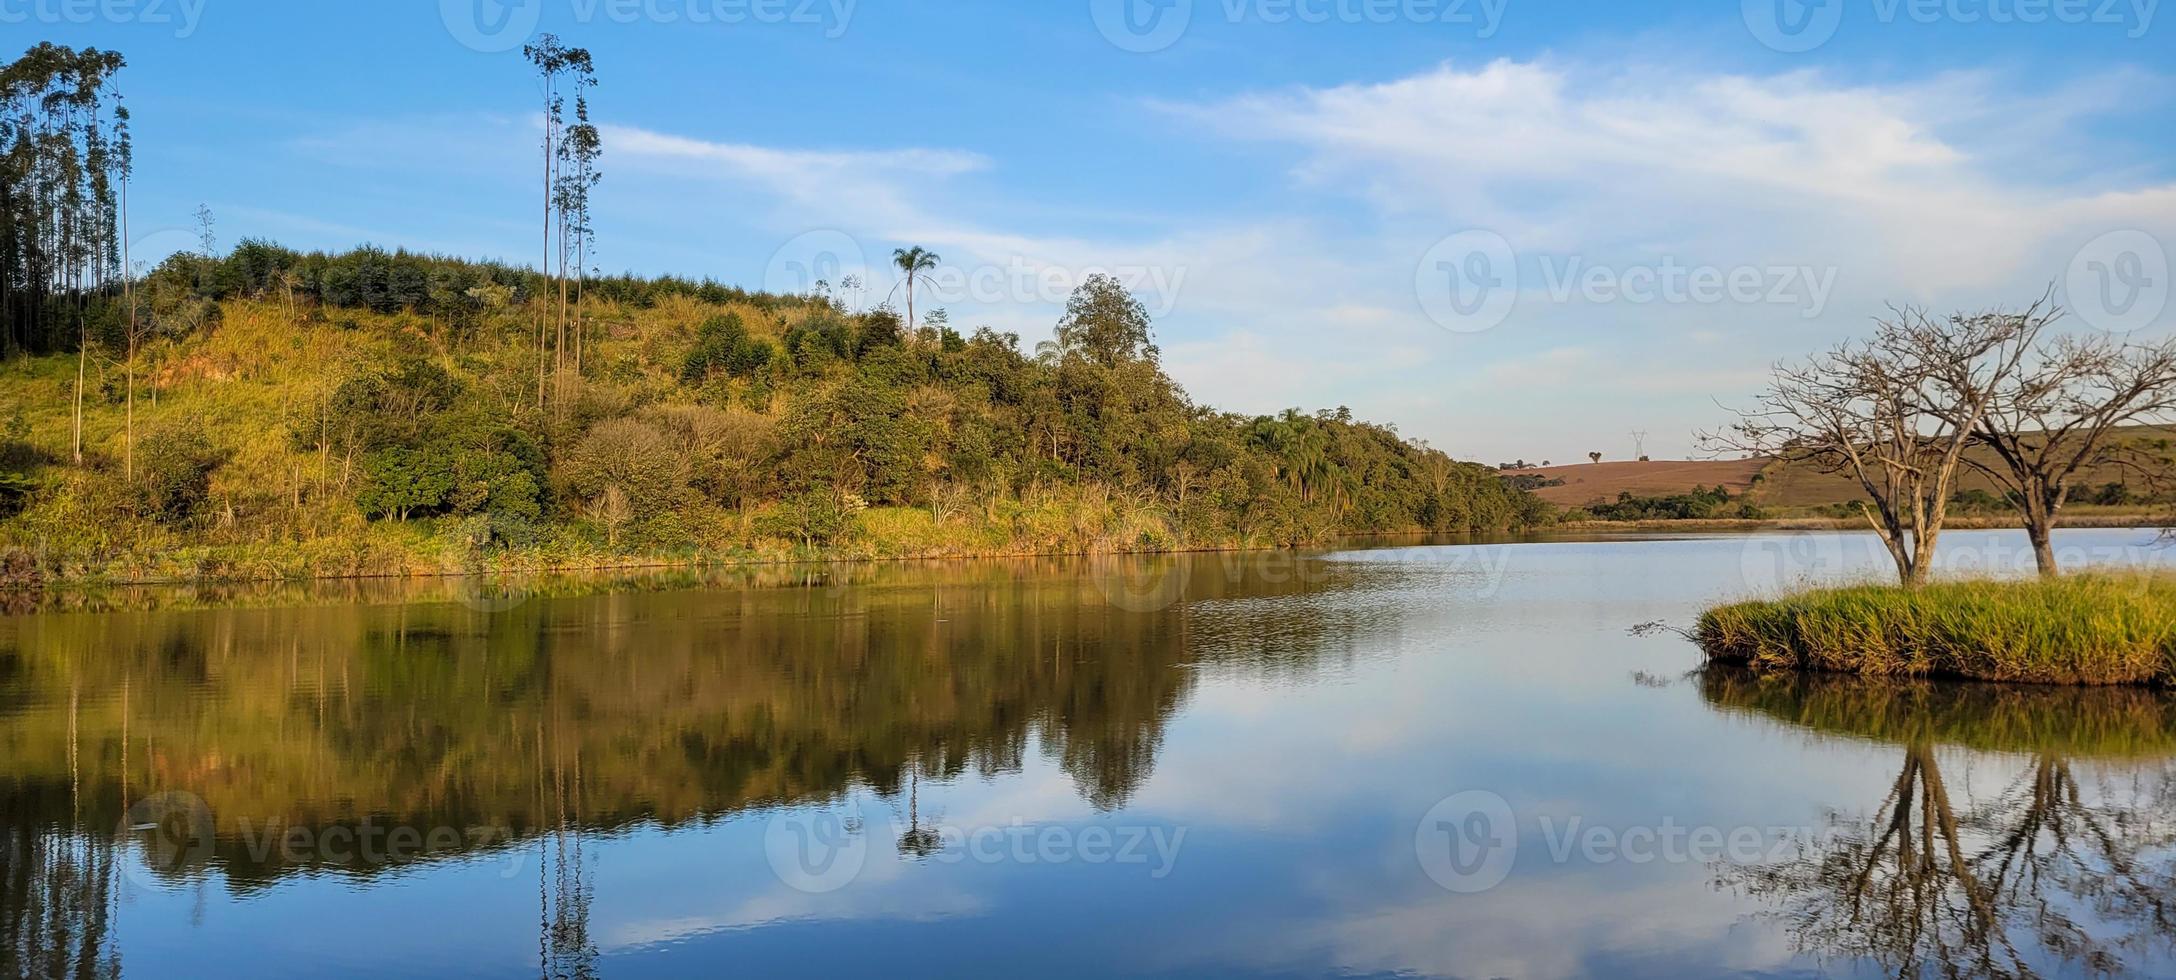 lago com paisagem natural de terras agrícolas na zona rural foto